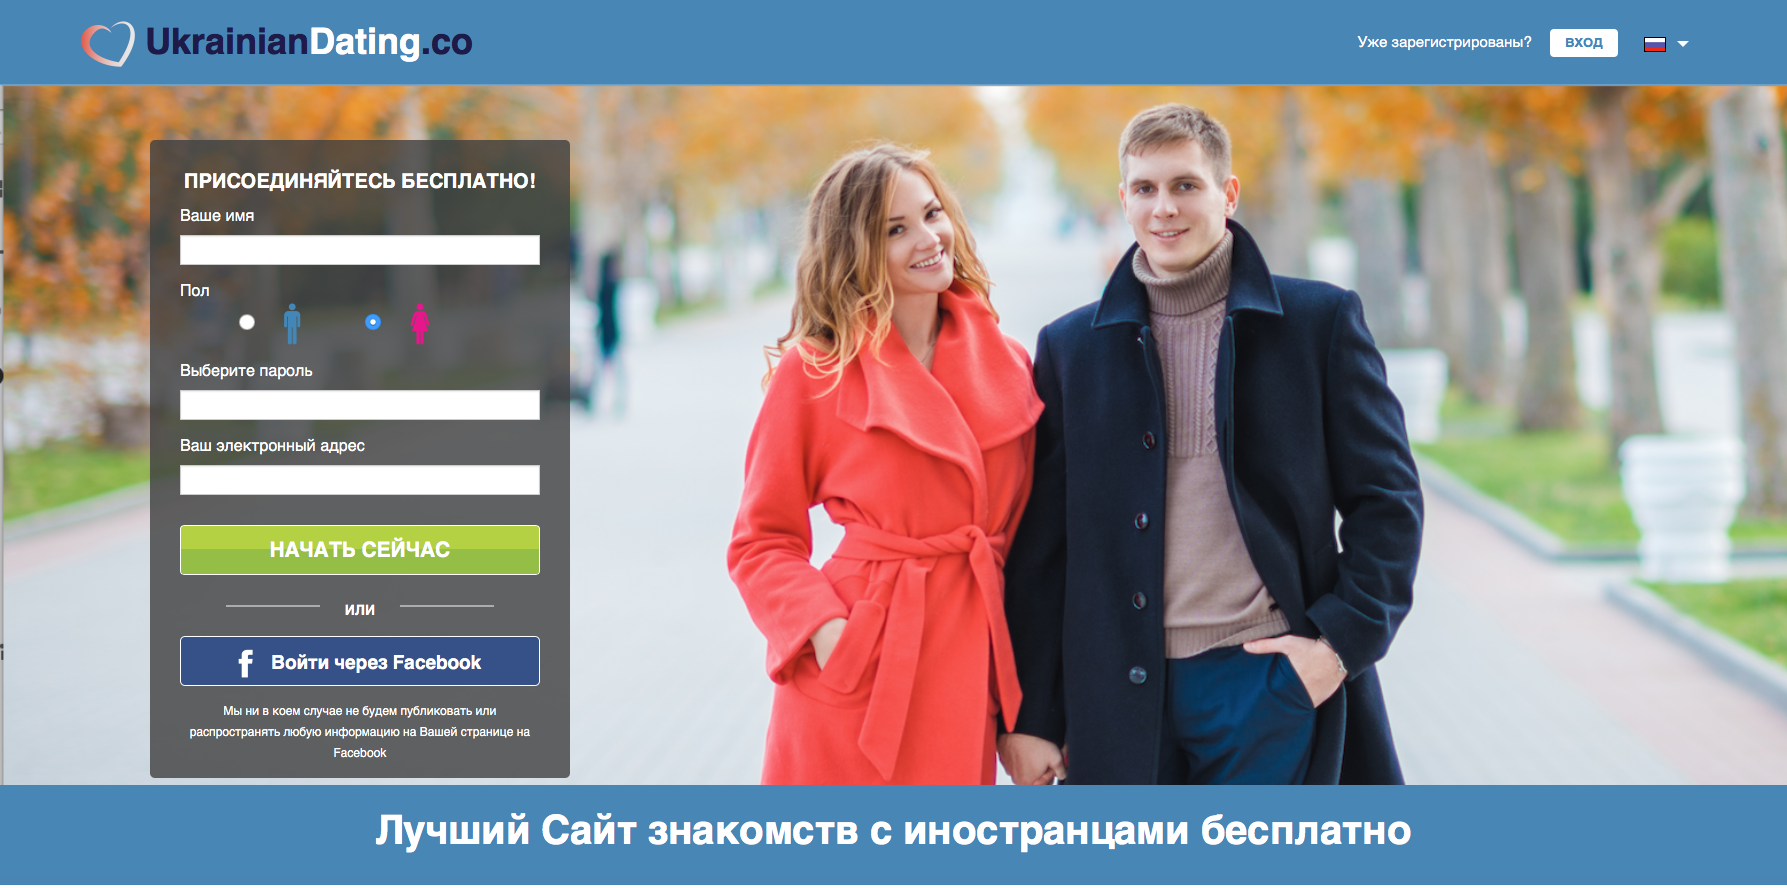 Russian dating — бесплатный международный сайт знакомств